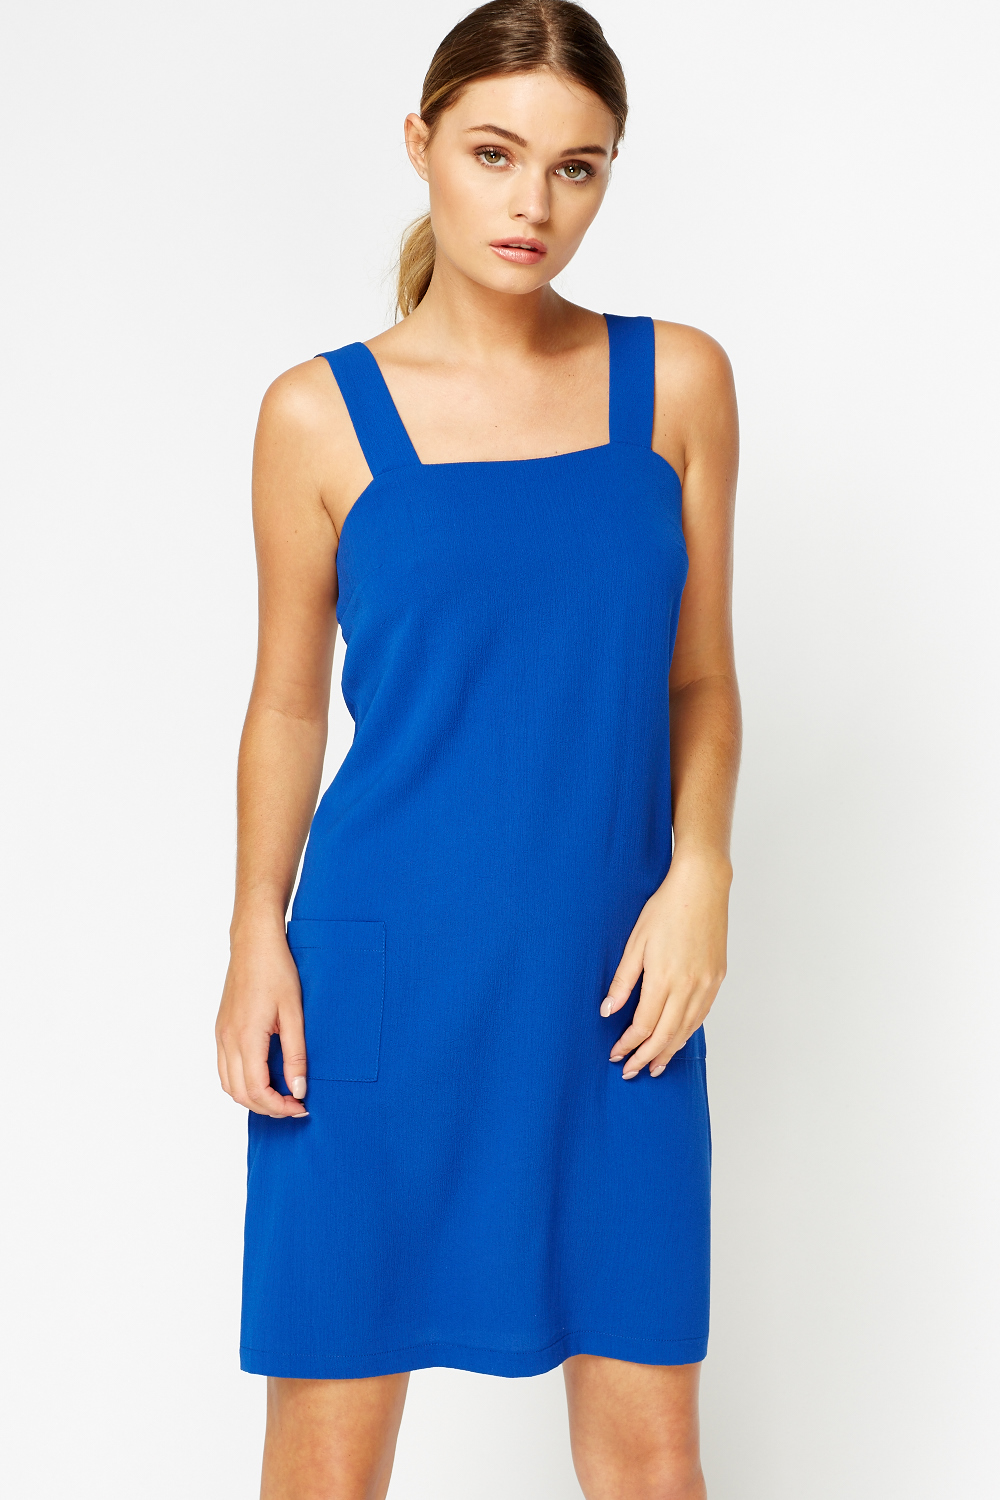 Royal Blue Pinafore Dress - Just